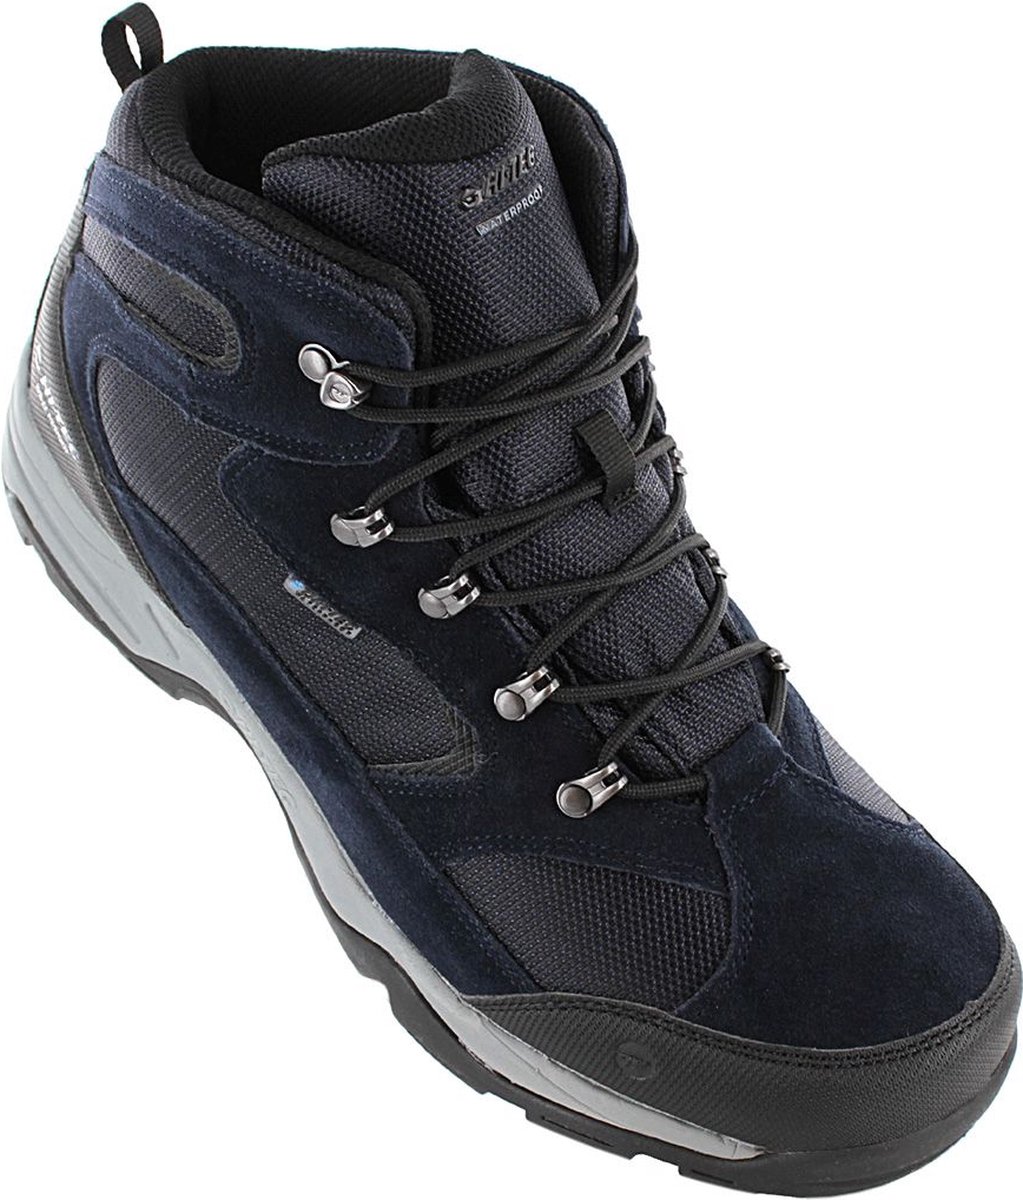 HI-TEC Storm WP - Waterproof - Heren Outdoor Wandelschoenen Outdoor schoenen Blauw O005357-031 - Maat EU 43 UK 9